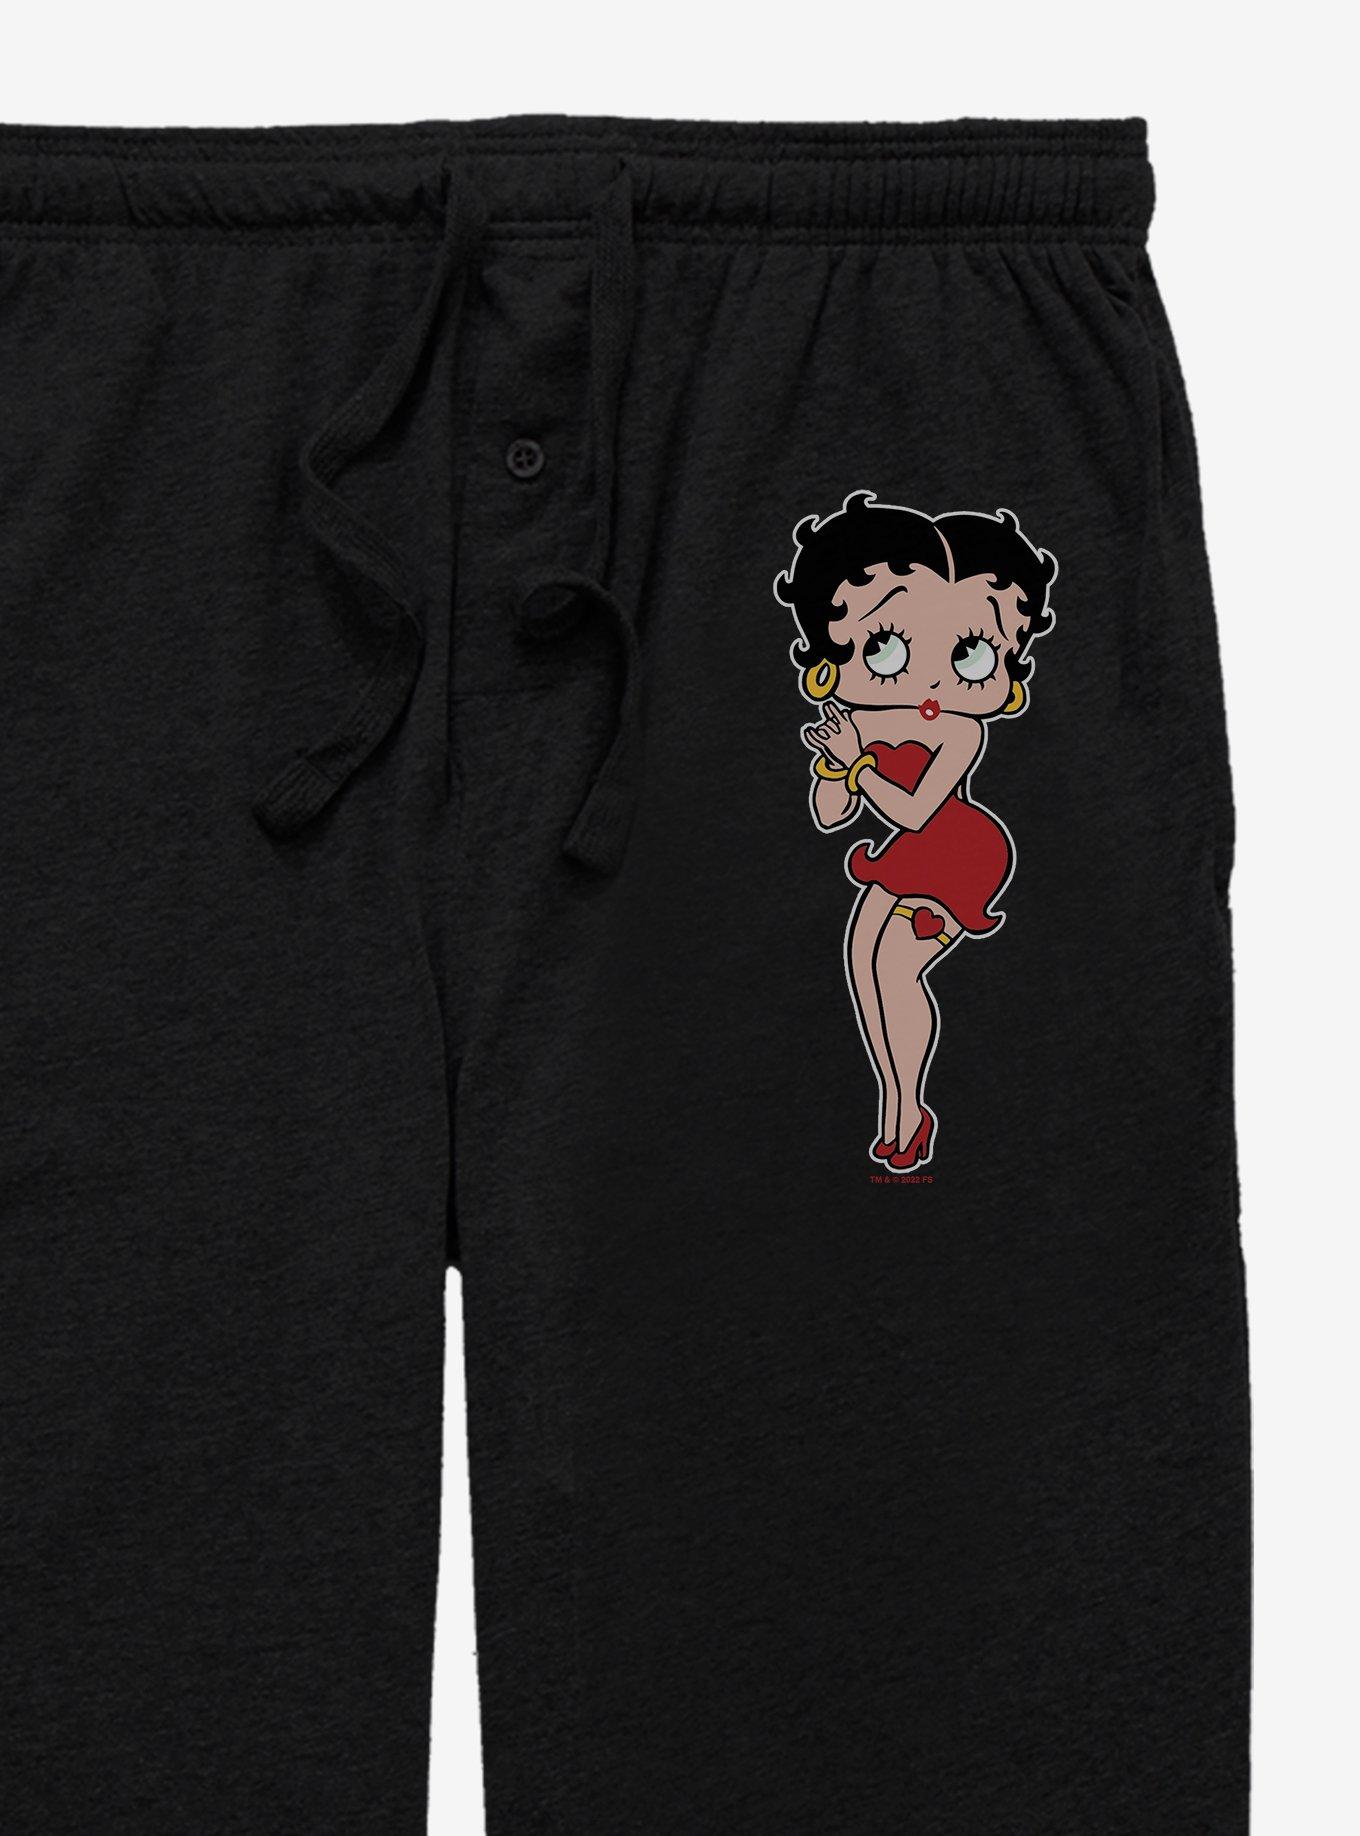 Betty Boop Pose Pajama Pants, BLACK, alternate